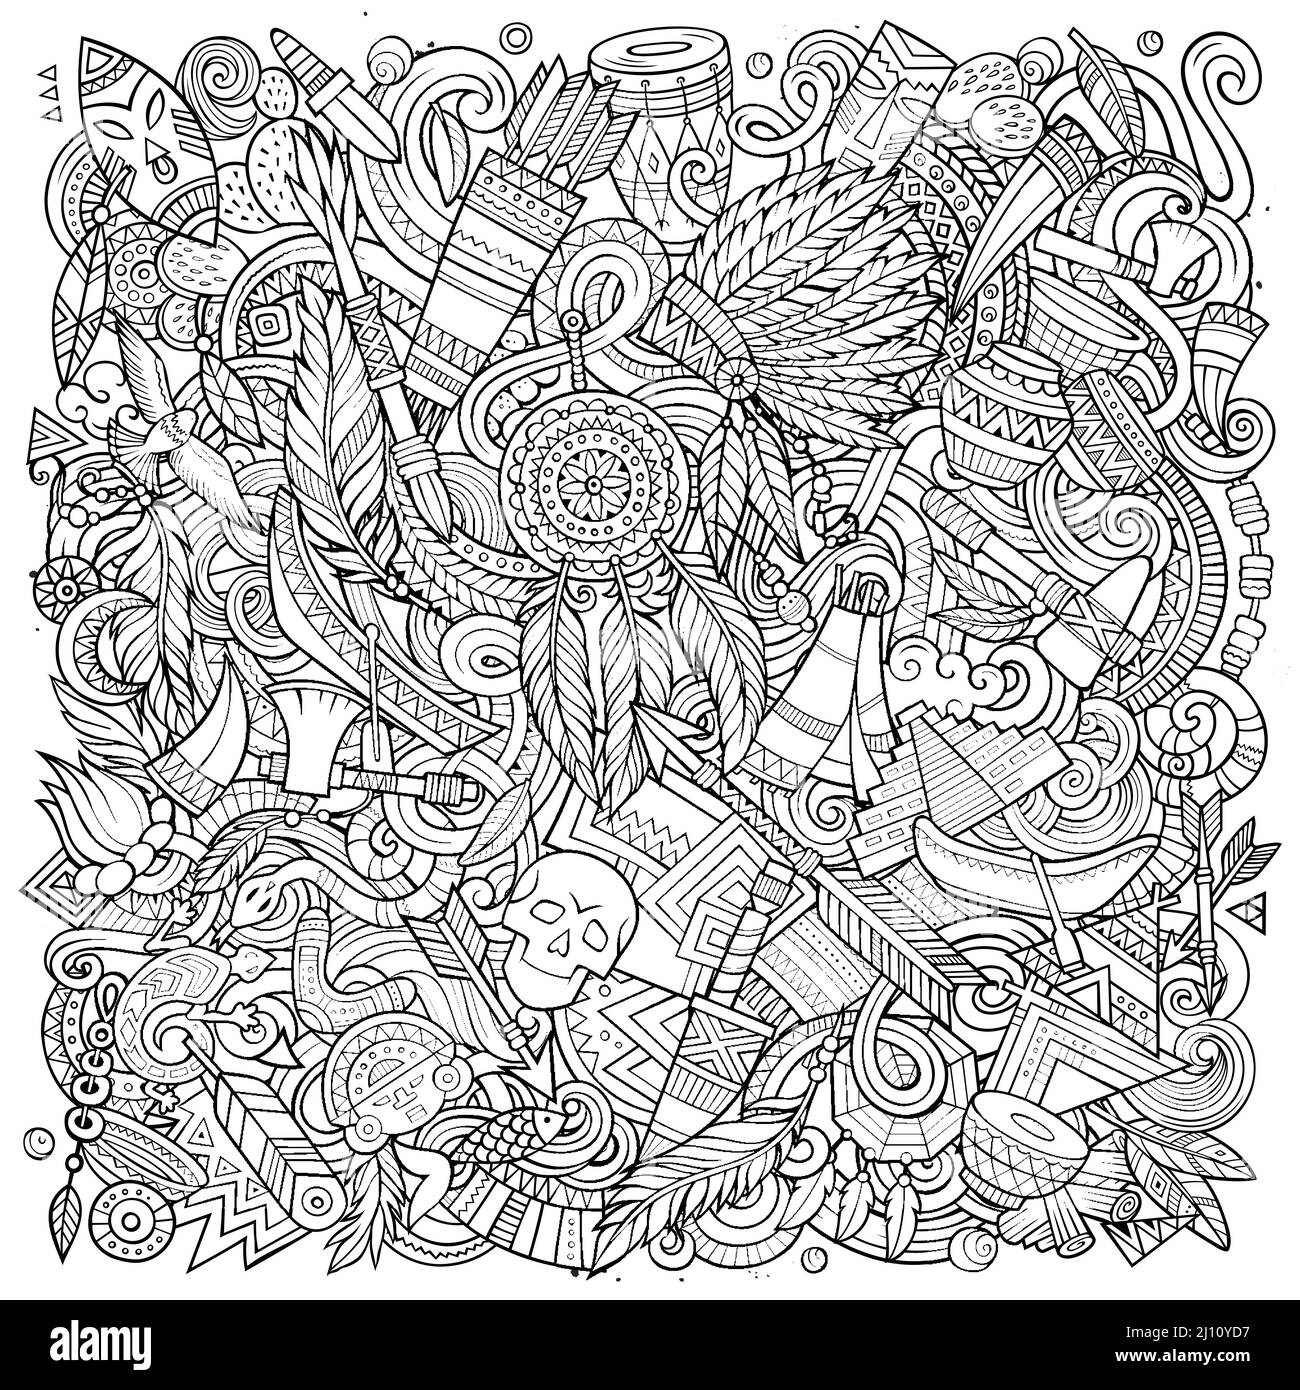 Handgezeichnete Vektorgrafiken von indianischen Ureinwohner. Tribal-Poster. Ethnizität Elemente und Objekte Cartoon Hintergrund. Skizzenhaft lustiges Bild Stock Vektor